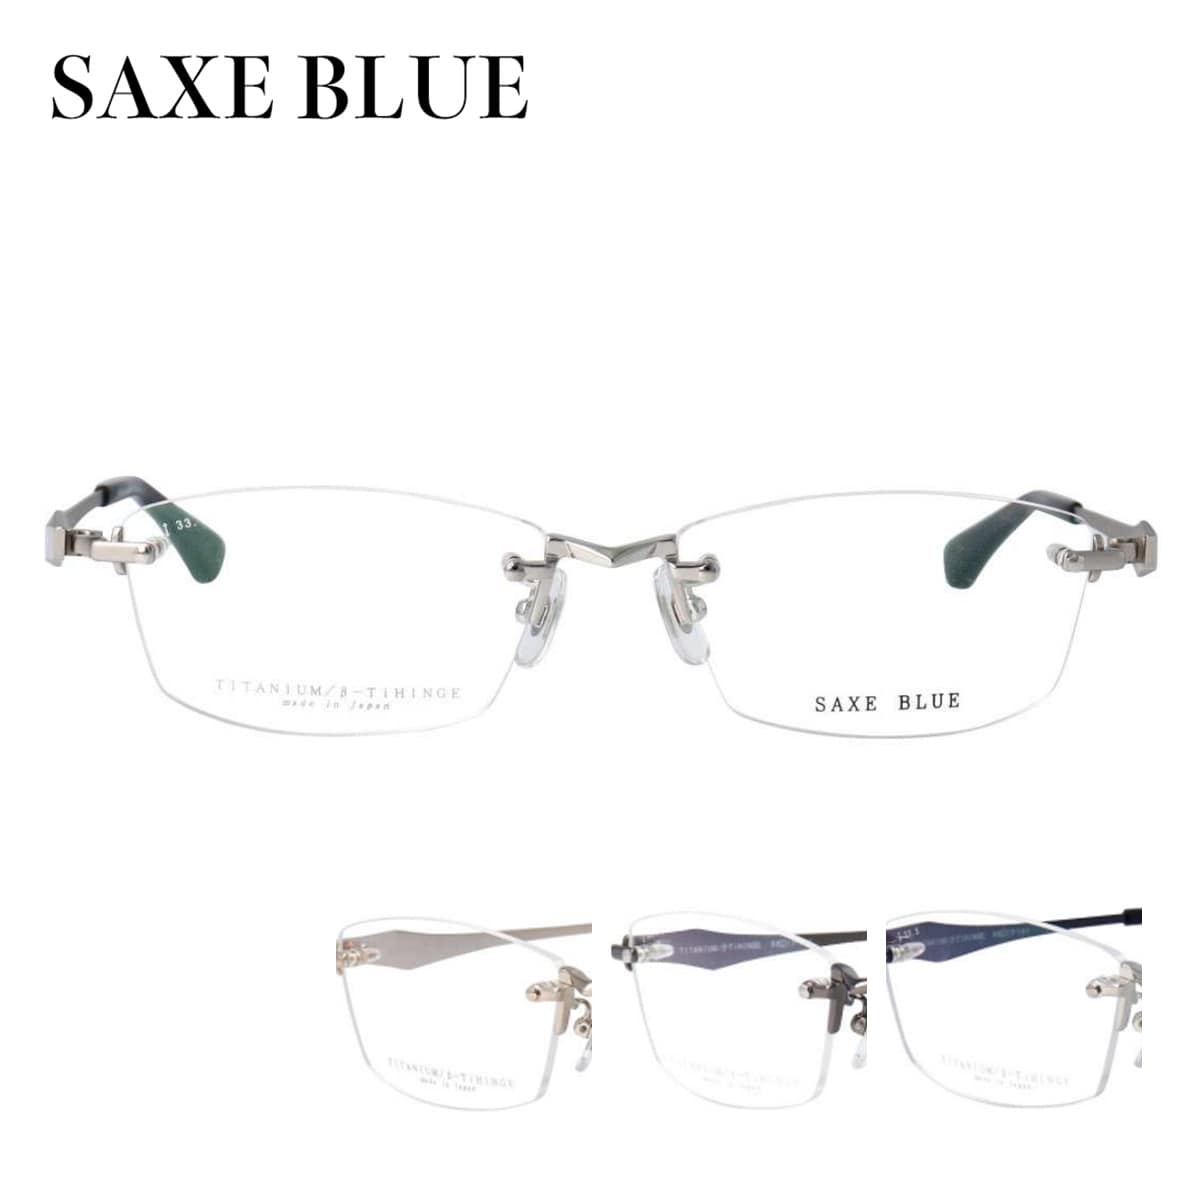 メガネフレーム ザックスブルー SB-7132 55サイズ スクエア 縁なし ツーポイント リムなし 丈夫 薄型 シンプル クラシカル シック メンズ 紳士 男性 ビジネス SAXE BLUE 軽量 細身 度付き可 チタン 日本製 眼鏡 Made in Japan めがね